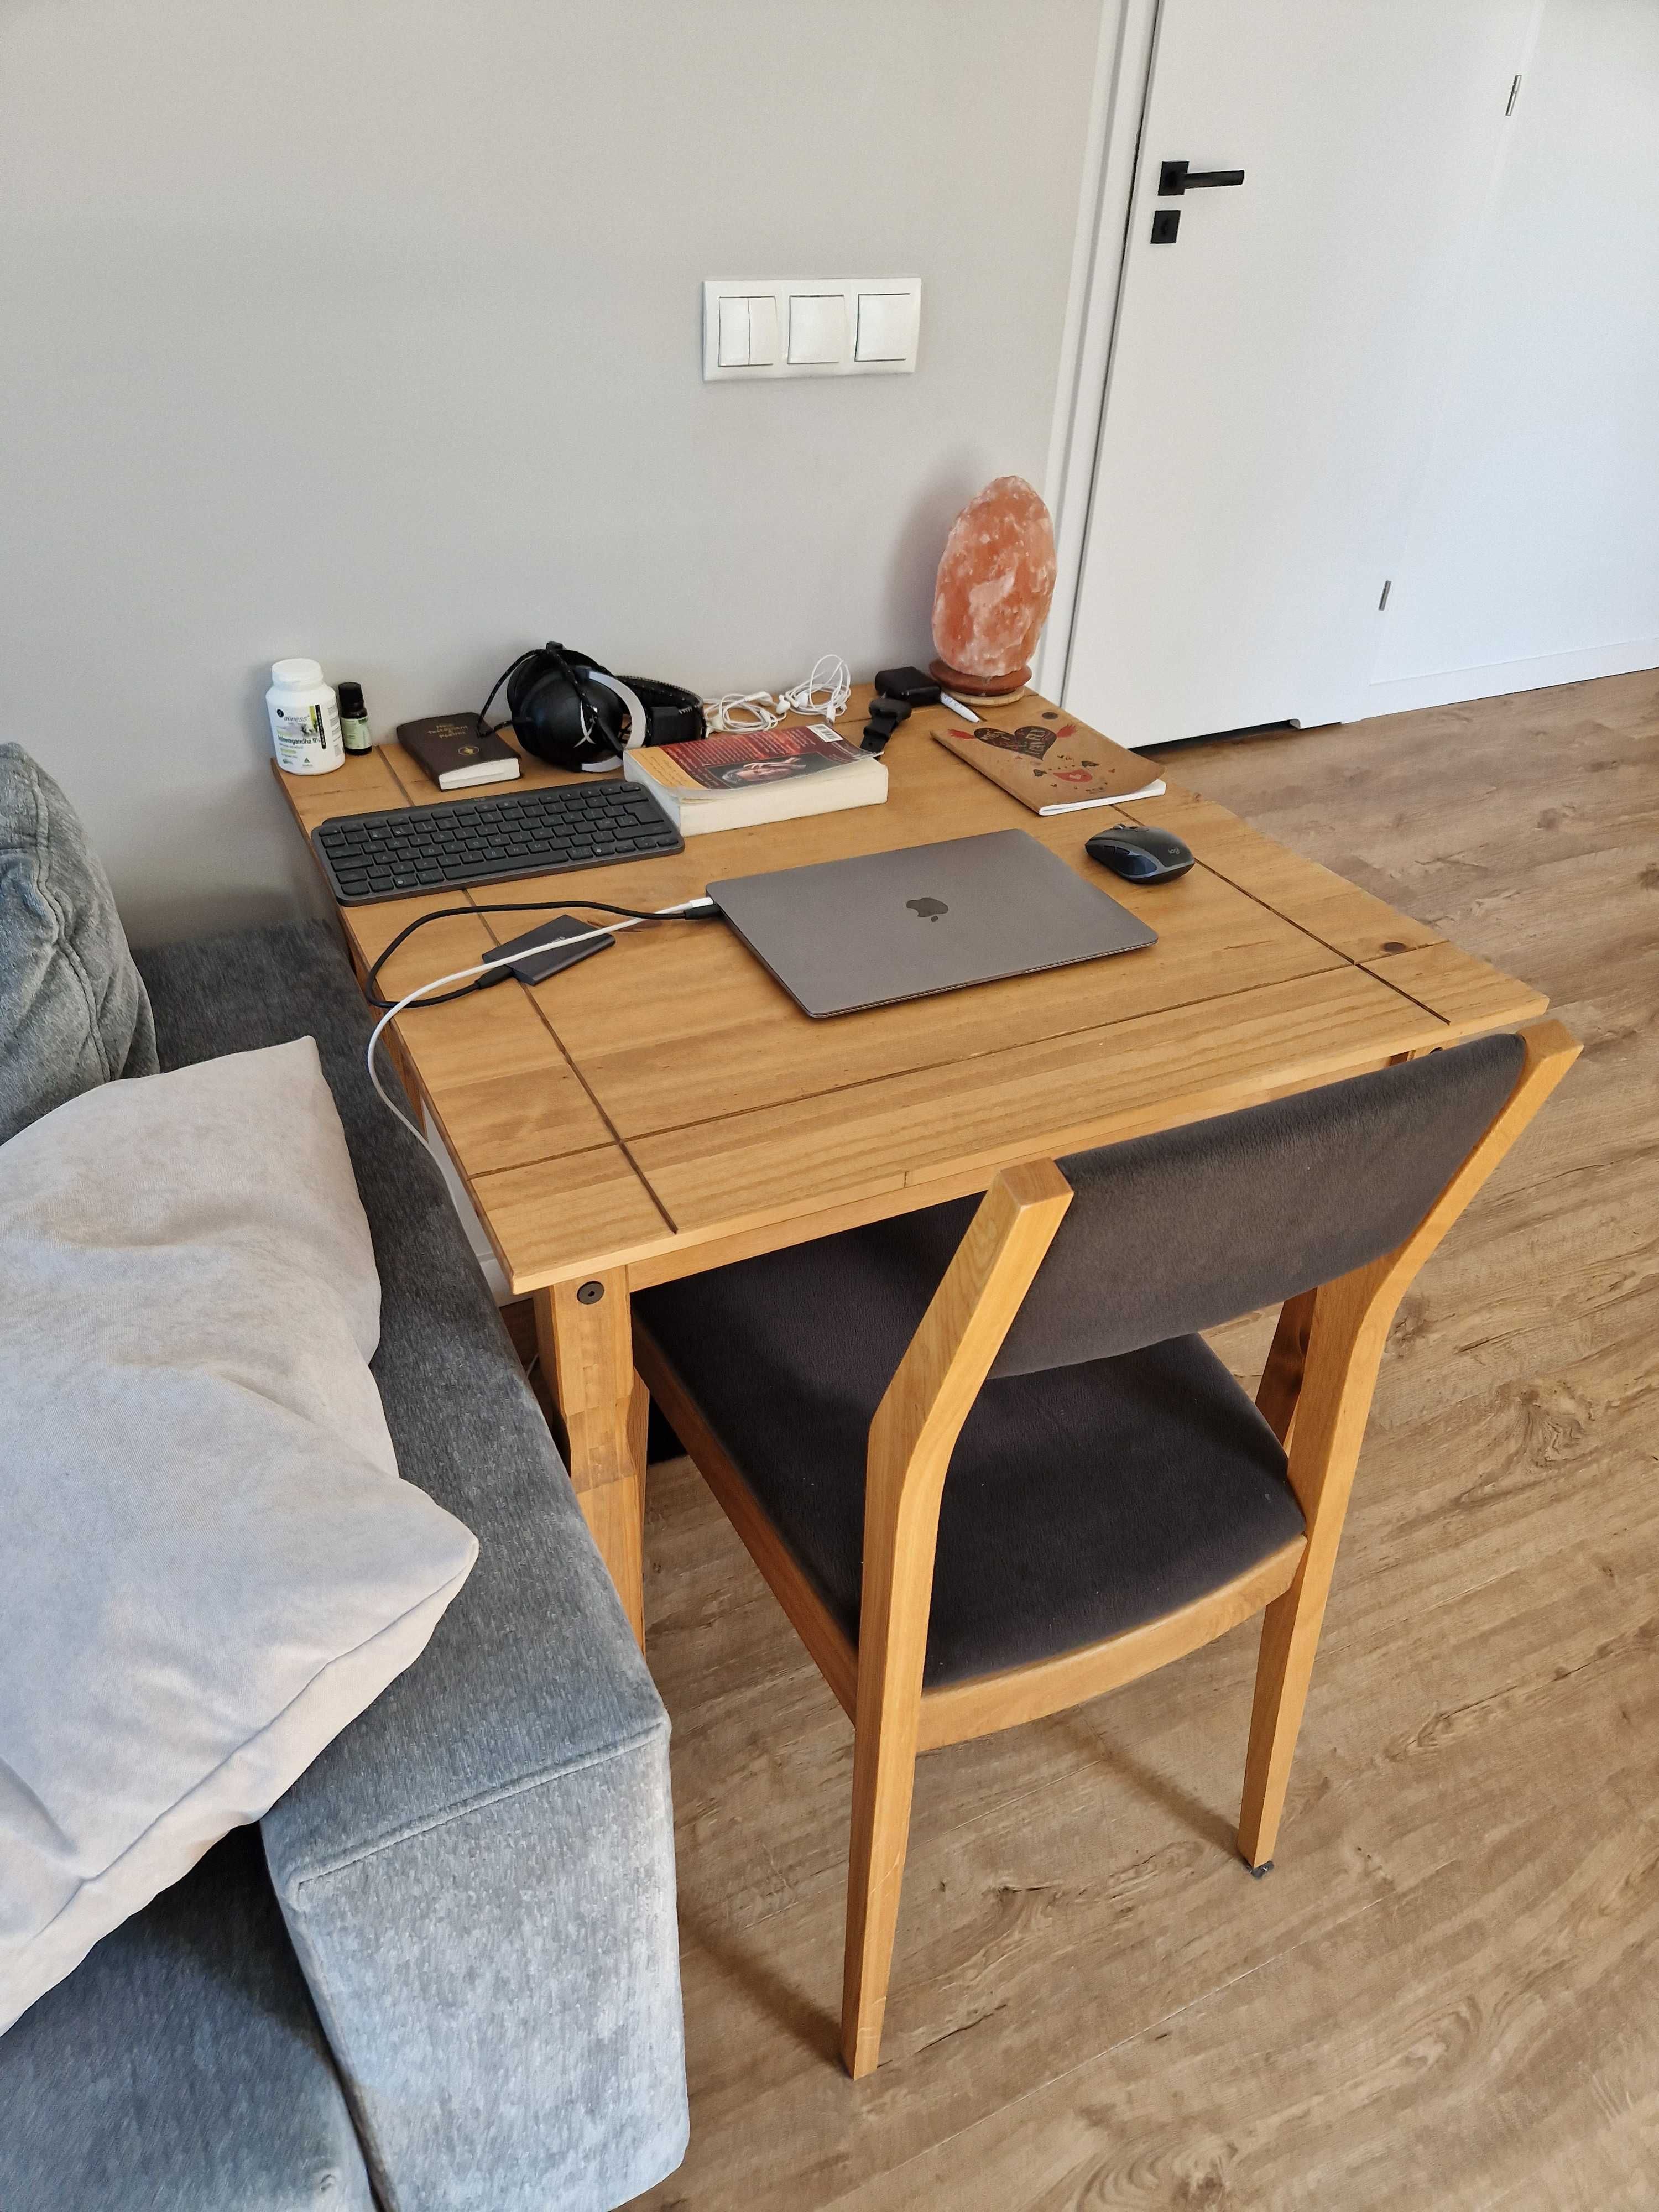 Stół/biurko, odkręcane nogi